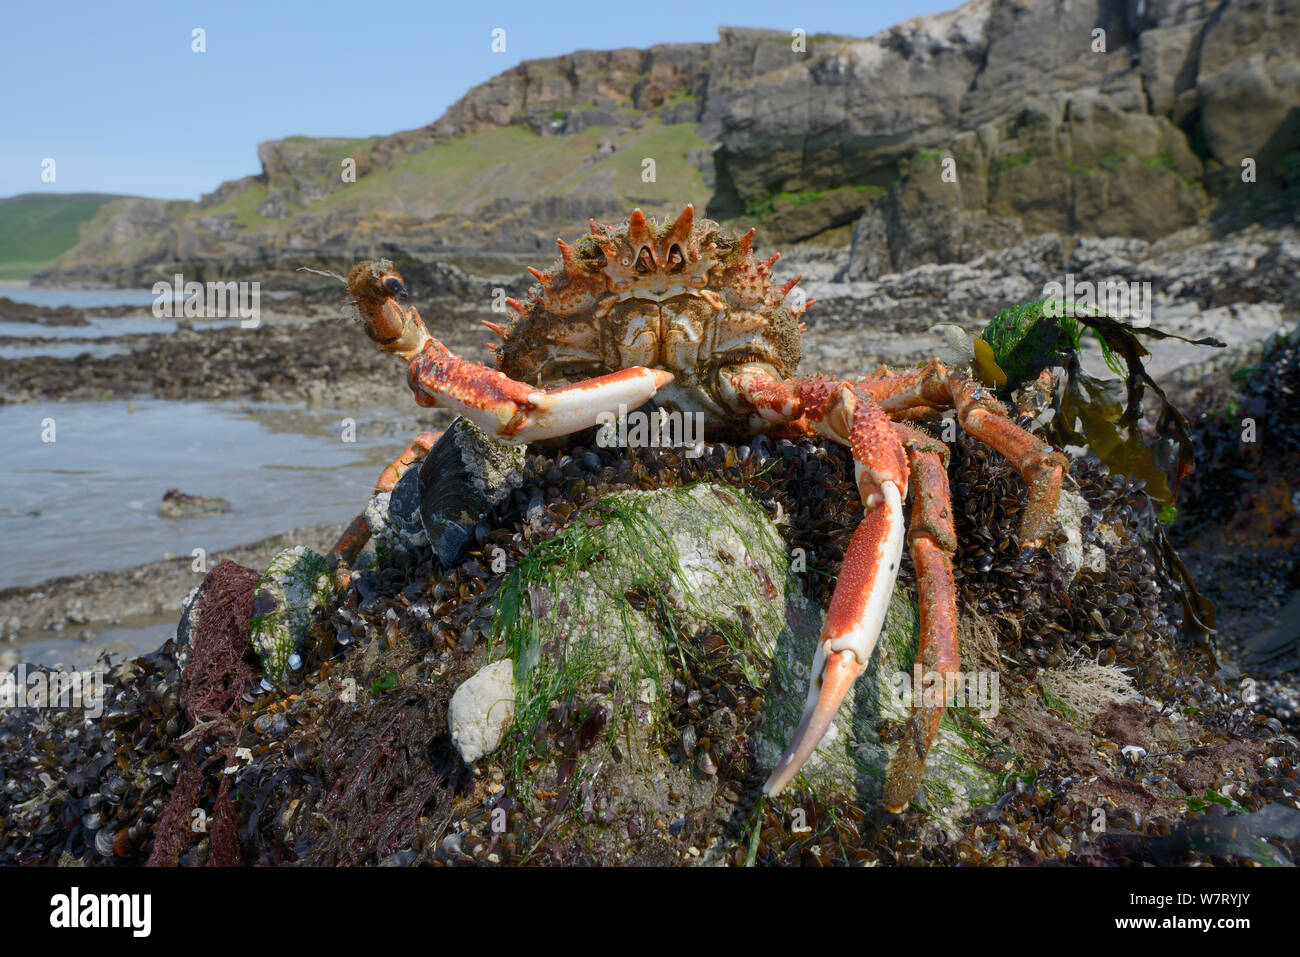 Homme araignée commune (Maja brachydactyla / Maja squinado) en position défensive exposée sur une côte rocheuse sur une marée de très faible, Rhossili, la péninsule de Gower, au Royaume-Uni, en juin. Banque D'Images